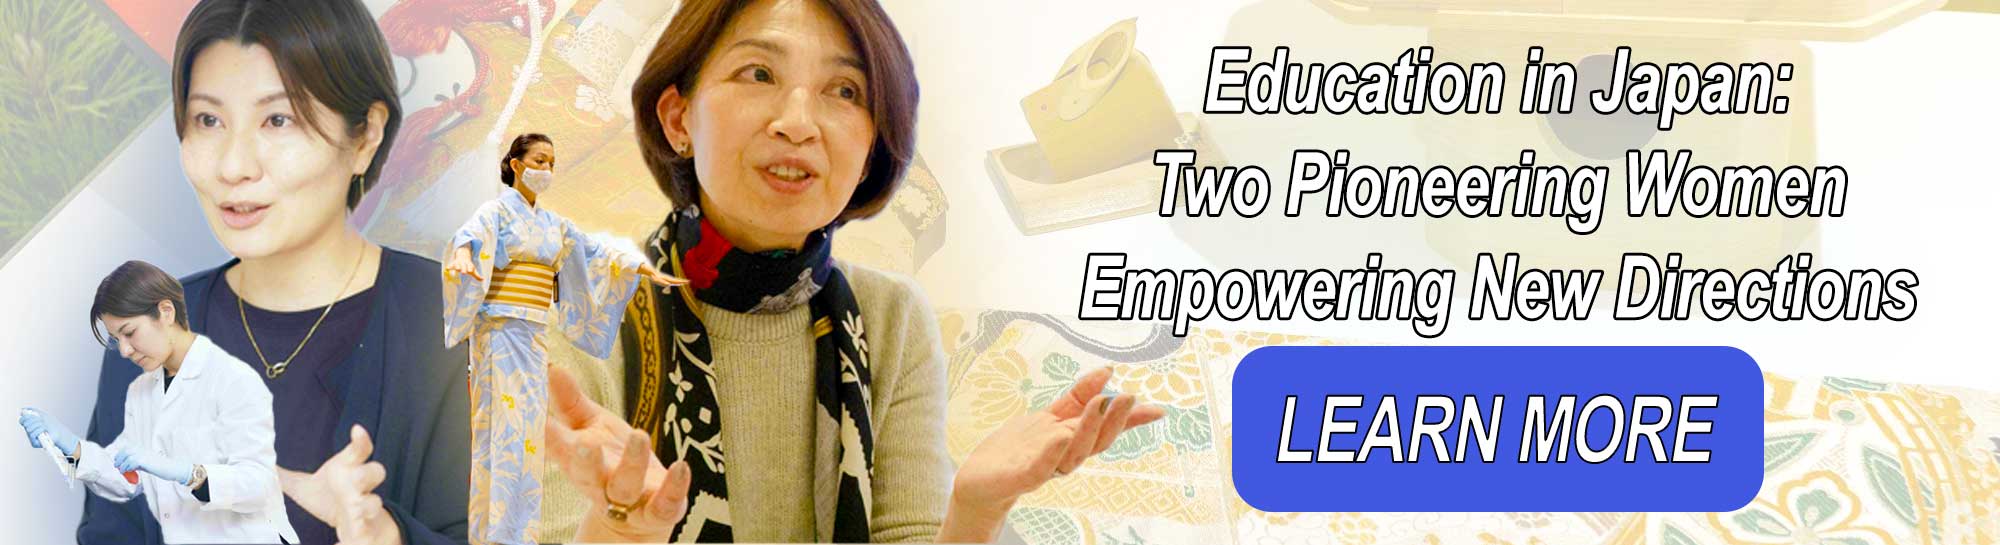 日本の教育：新しい方向性を提示する2人の先駆的な女性